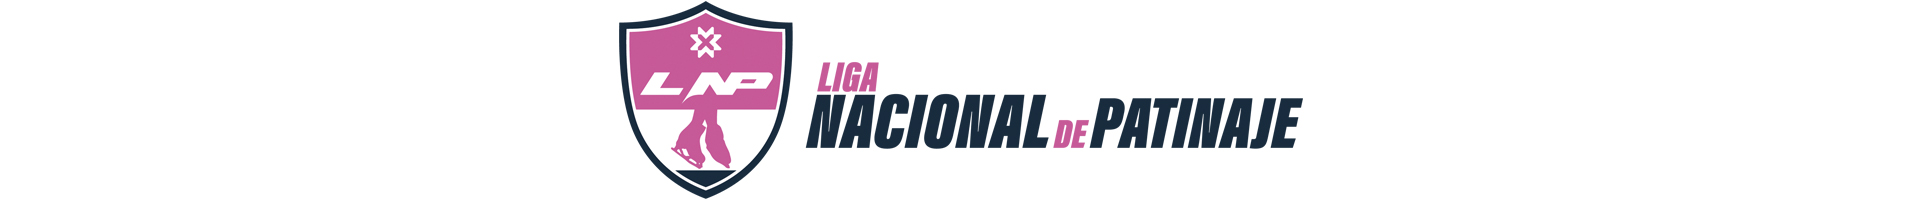 Patinaje, Liga Nacional de Patinaje &#8211; LNP, Real Federación Española Deportes de Hielo